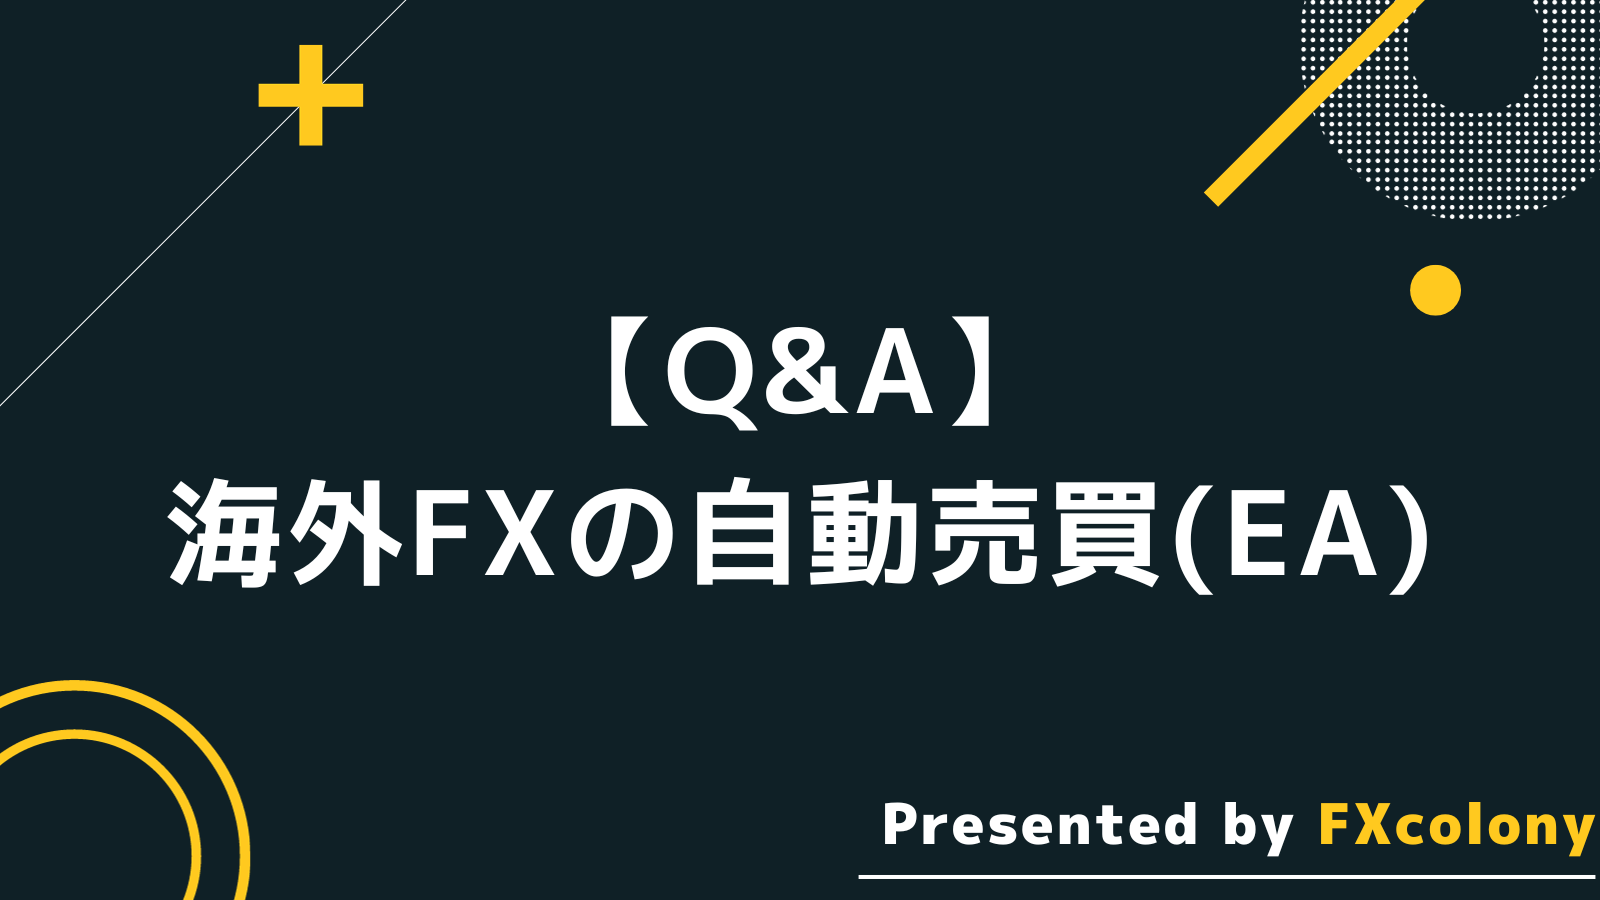 海外FX 自動売買(EA) Q&A